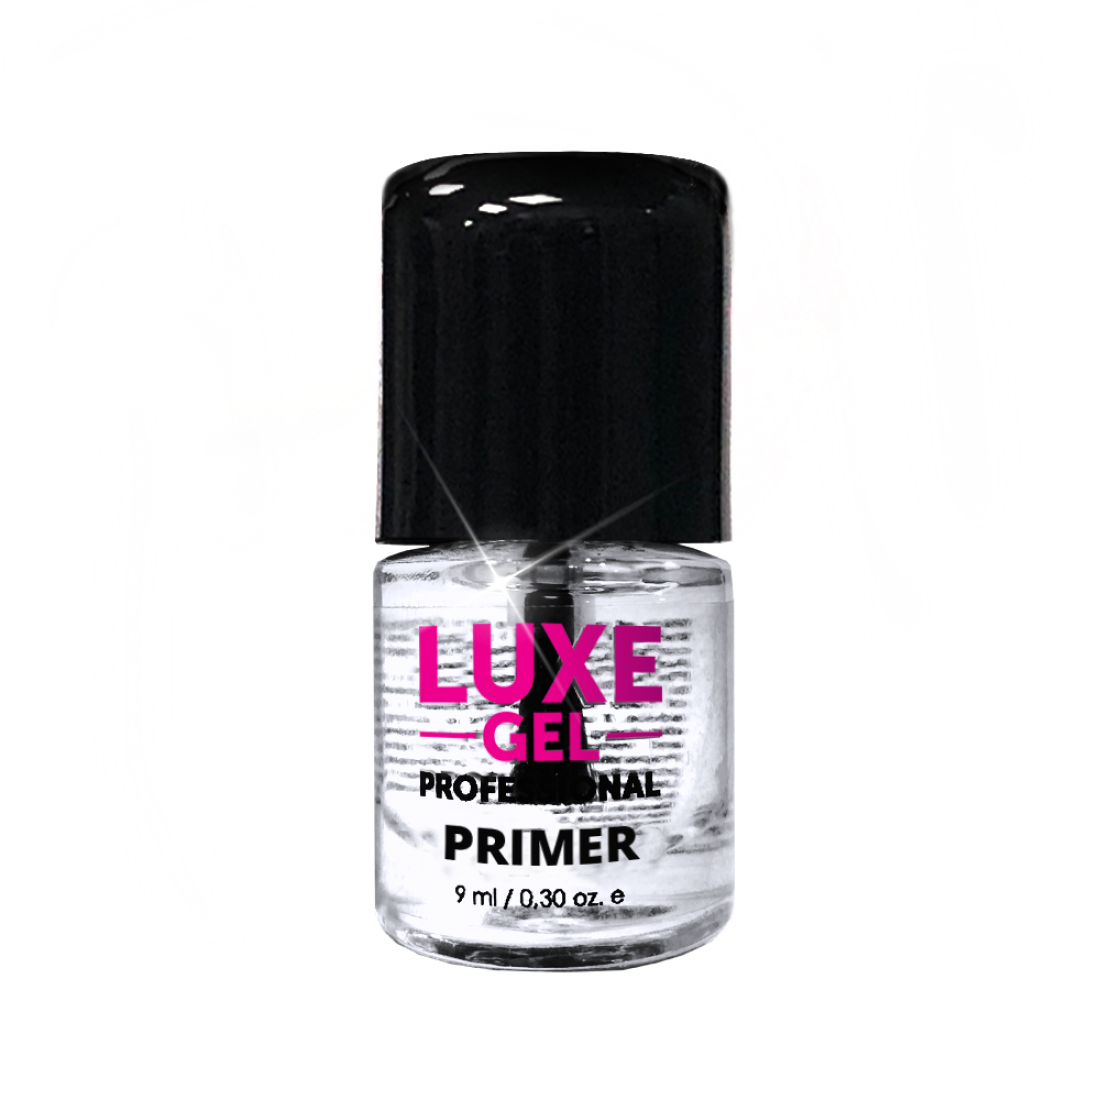 Luxe Nails - Alcohol isopropilico al 90% en spray. Uso